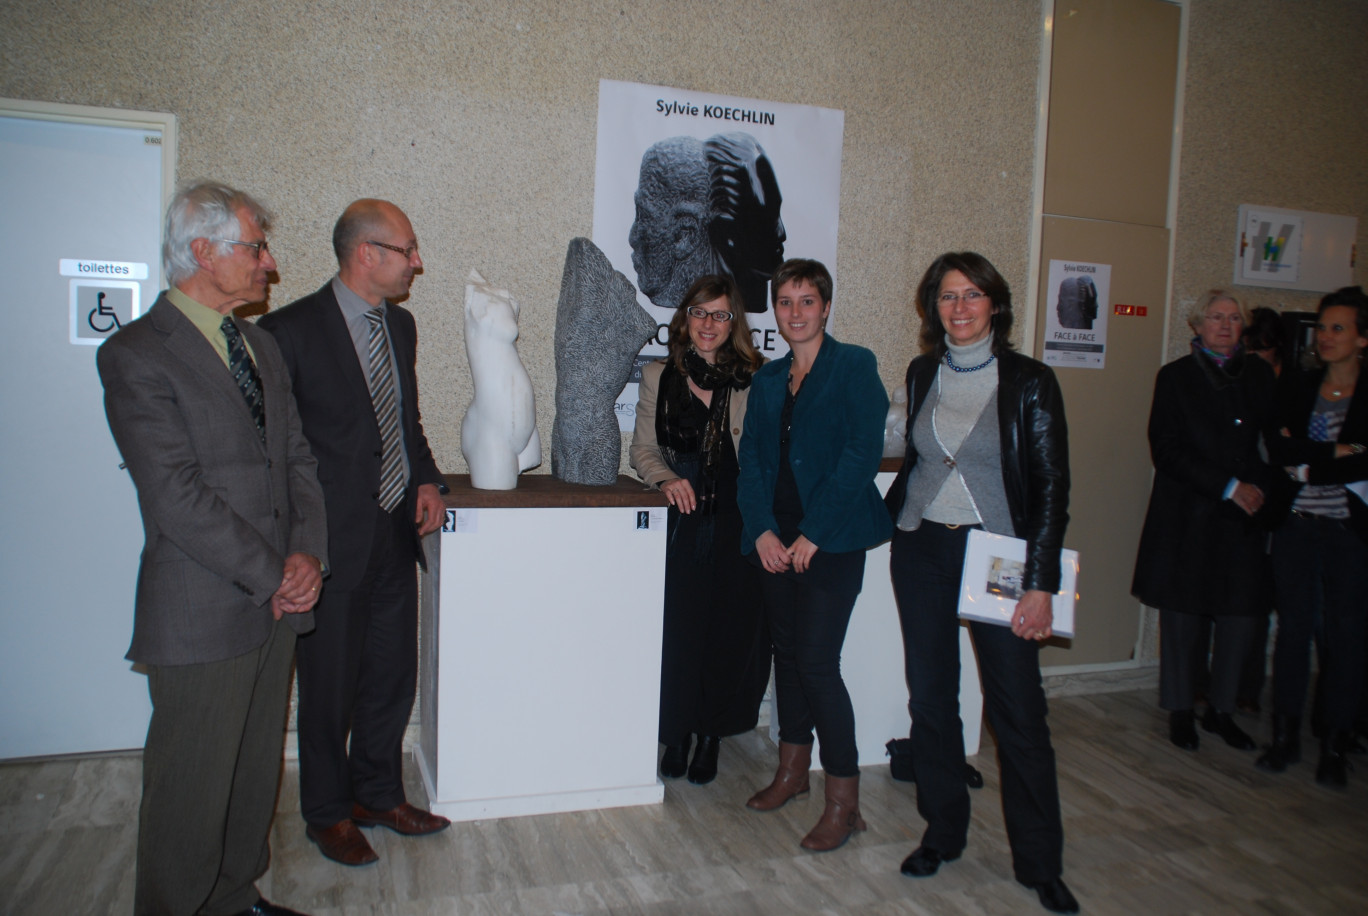 Lors du vernissage de l'expo de Sylvie Koechlin (à droite).